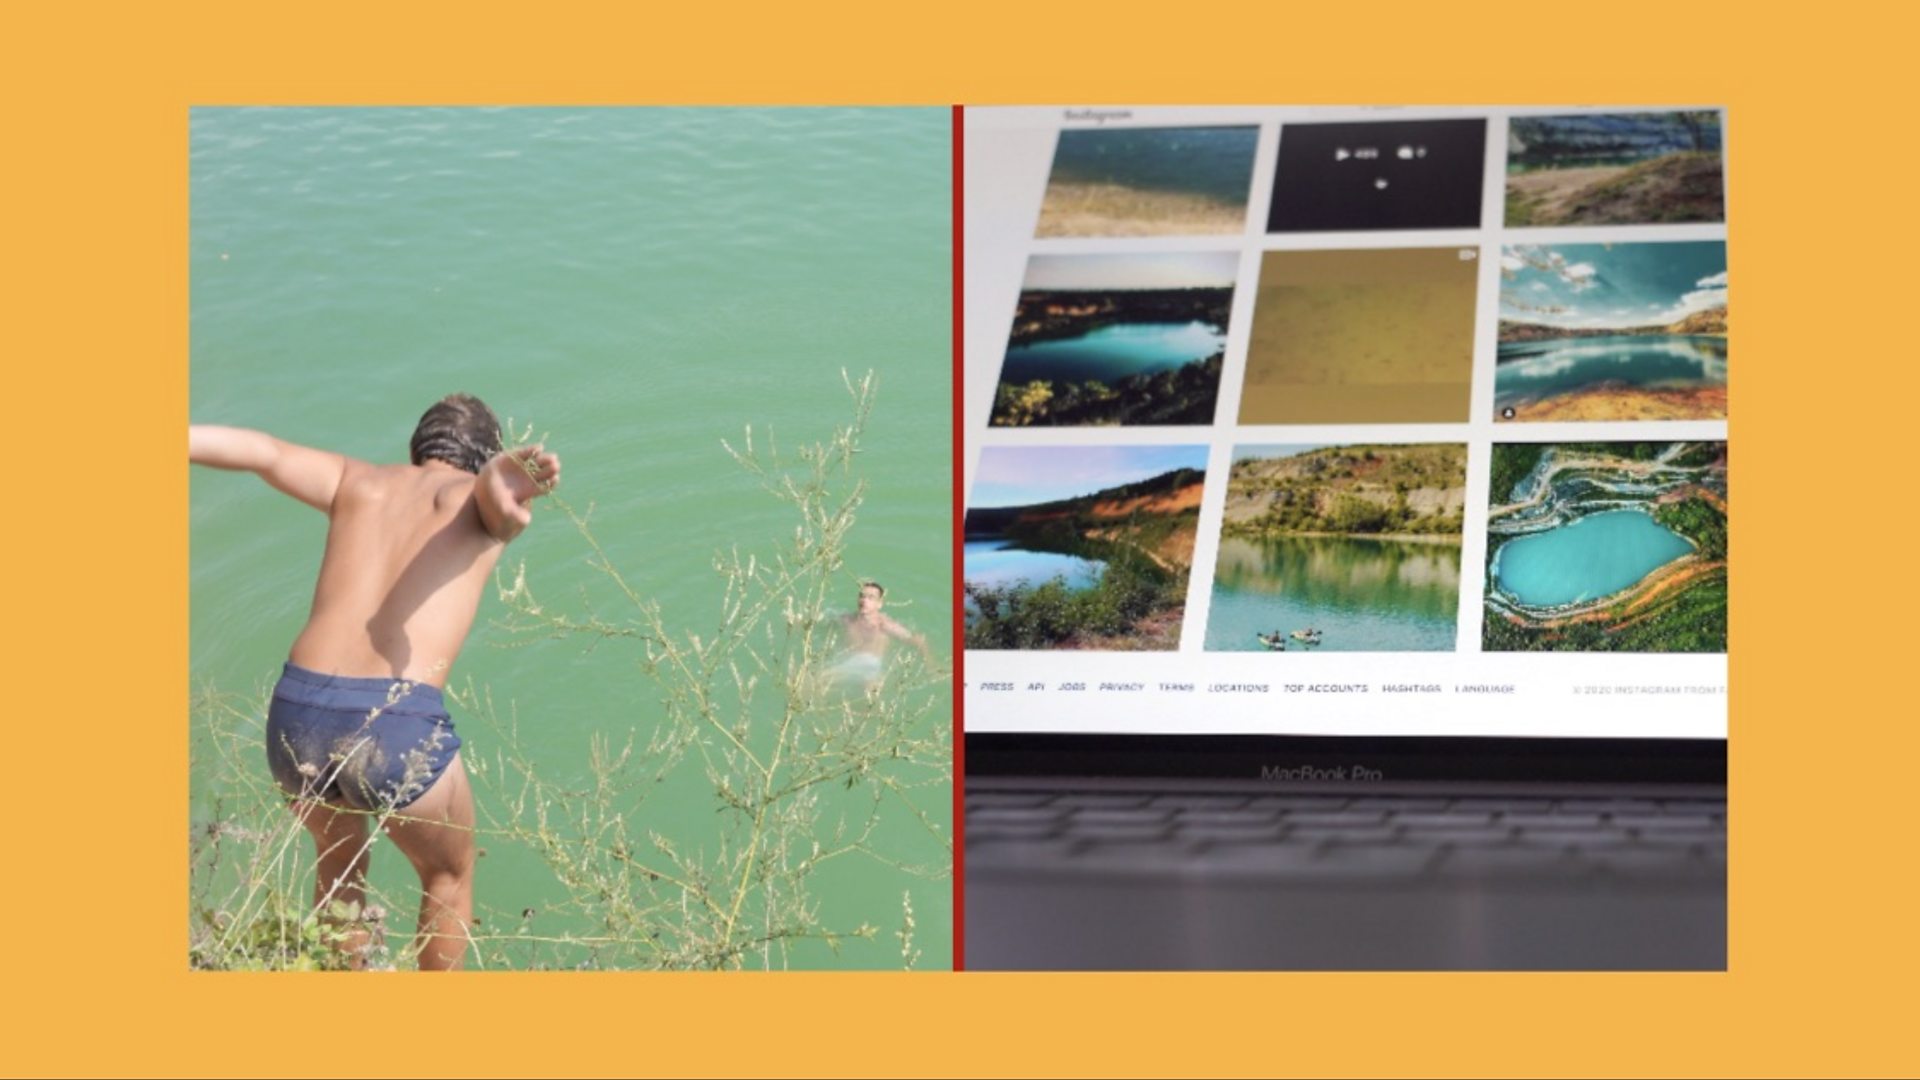 Језеро Бели камен: Инстаграм и реалност